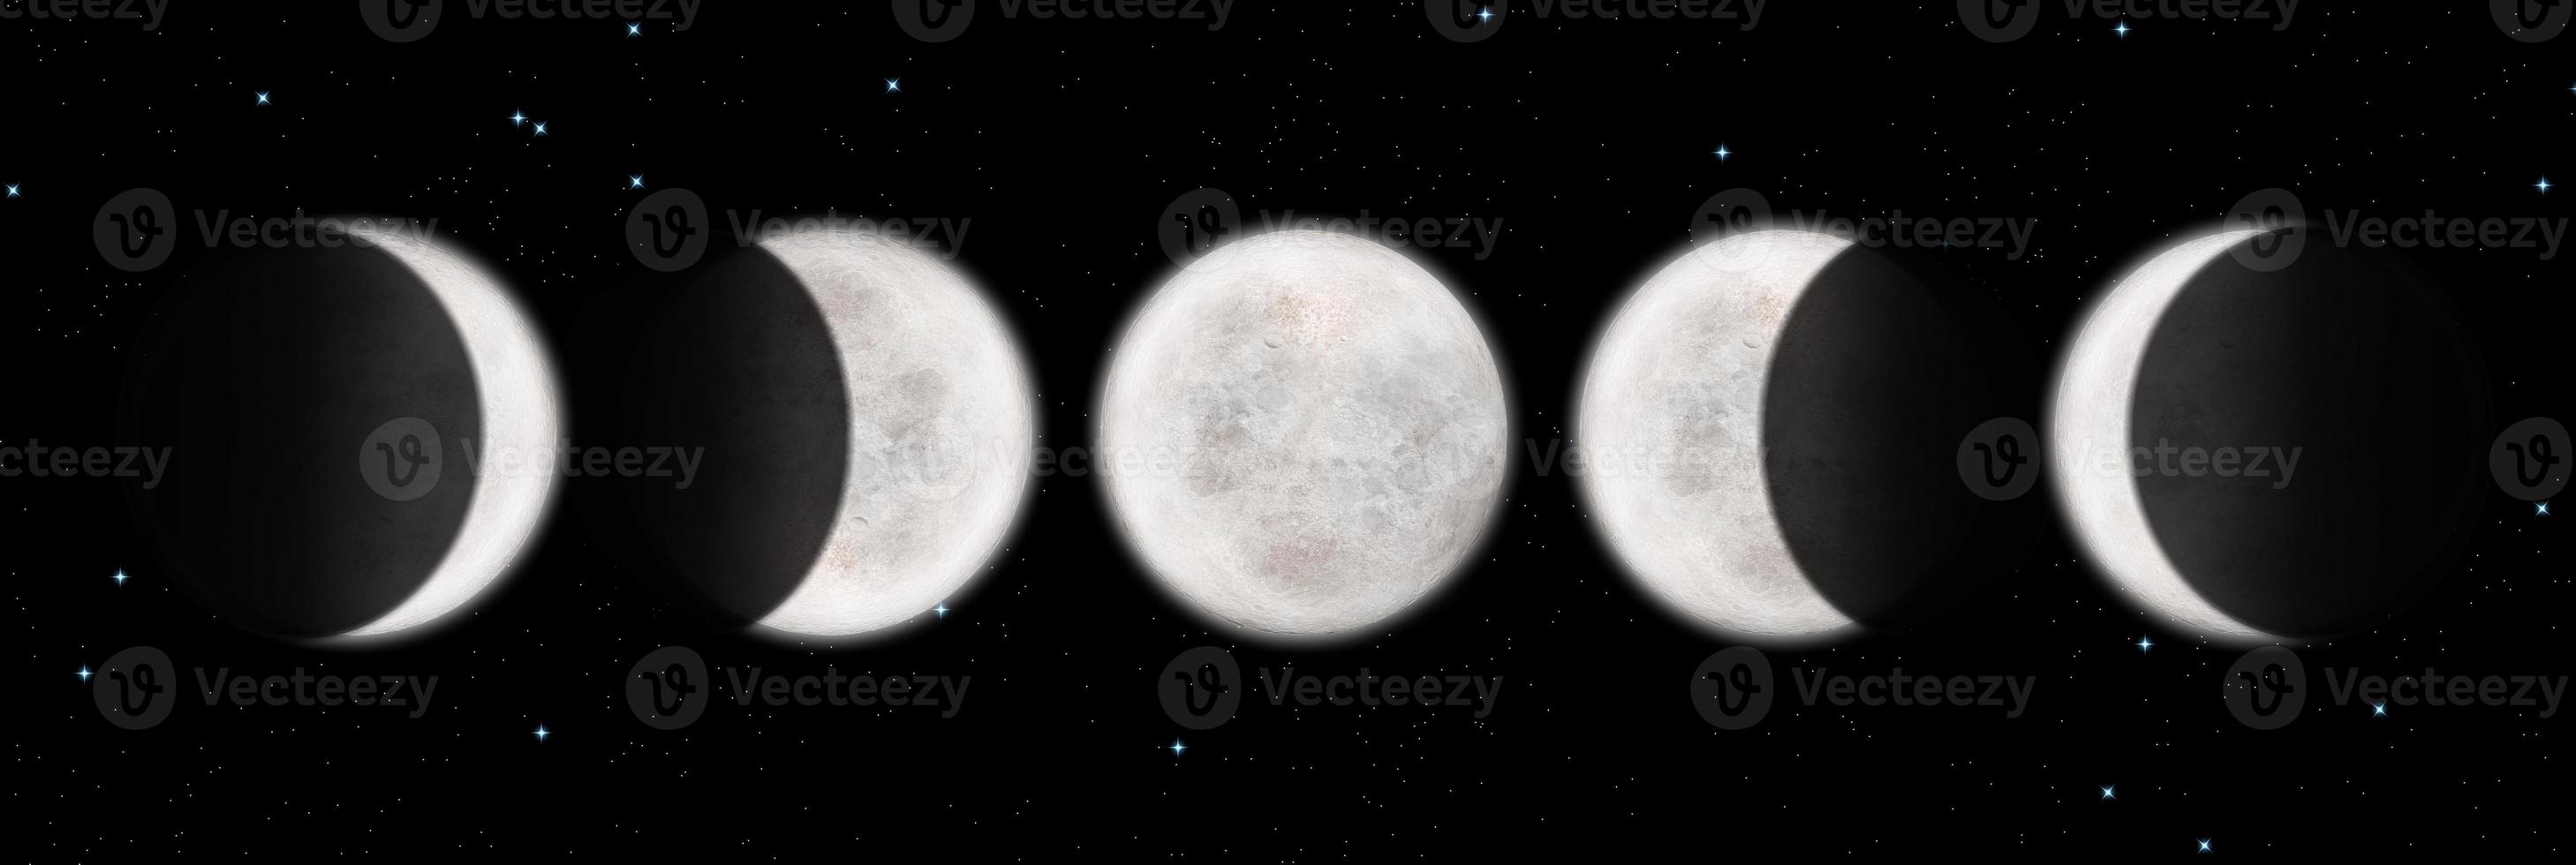 renderização 3d de alta resolução das fases da lua. ilustração de eclipse lunar de qualidade. a melhor lua texturizada. astronomia científica, superfície lunar detalhada. fundo preto. foto